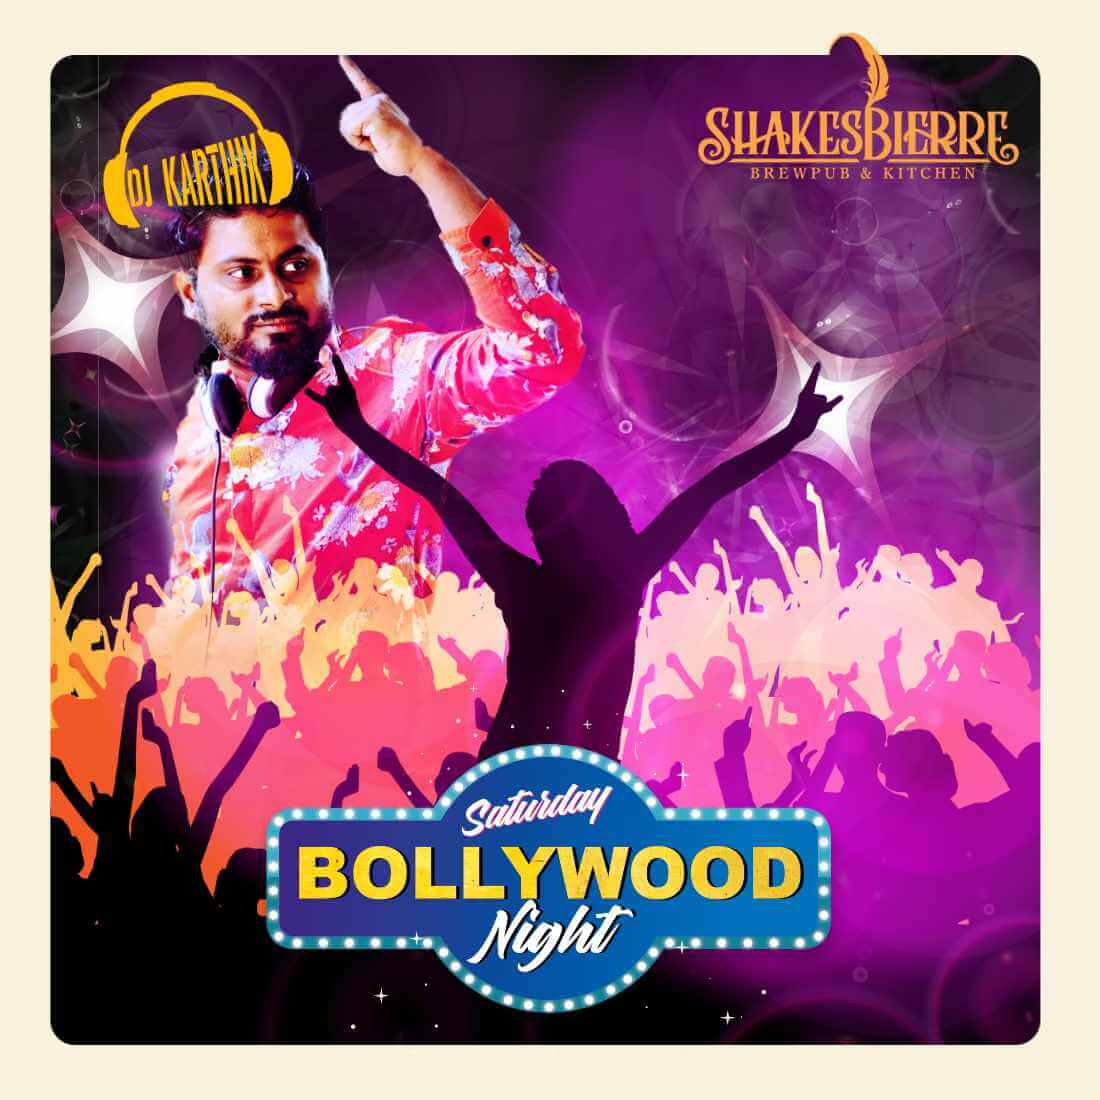 Shakesbierre Bollywood Night creative